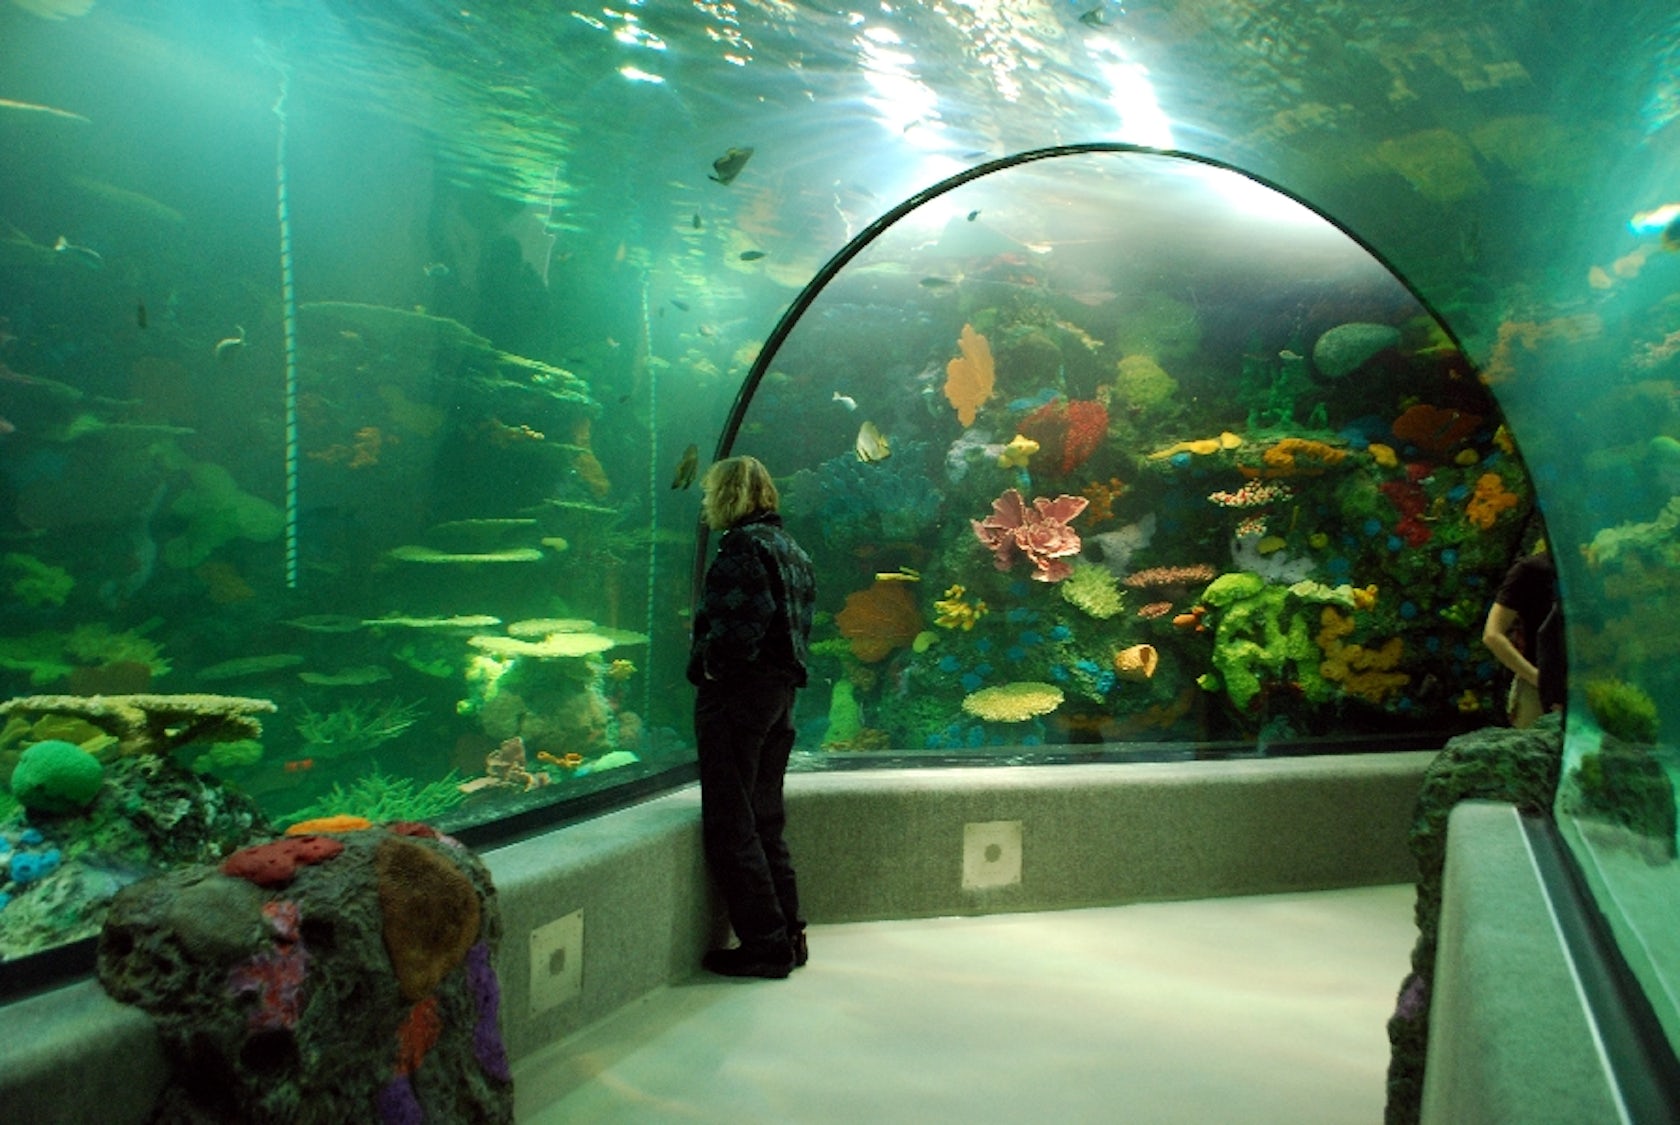 Virginia Aquarium